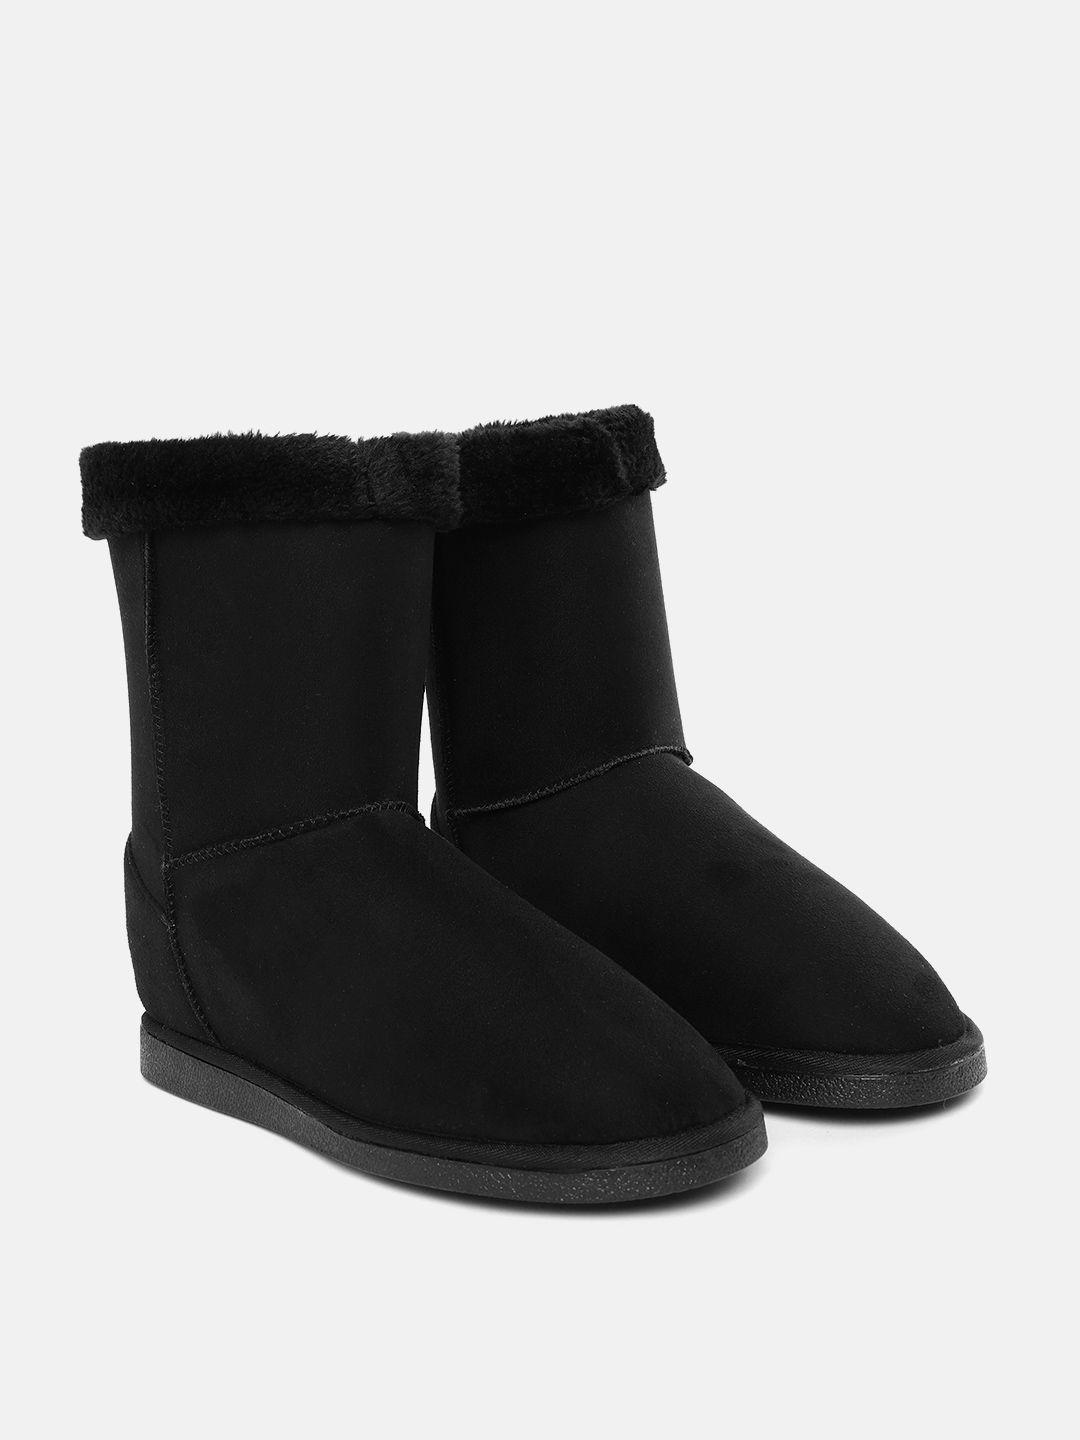 carlton-london-women-black-flat-winter-boots-with-faux-fur-trim-detail